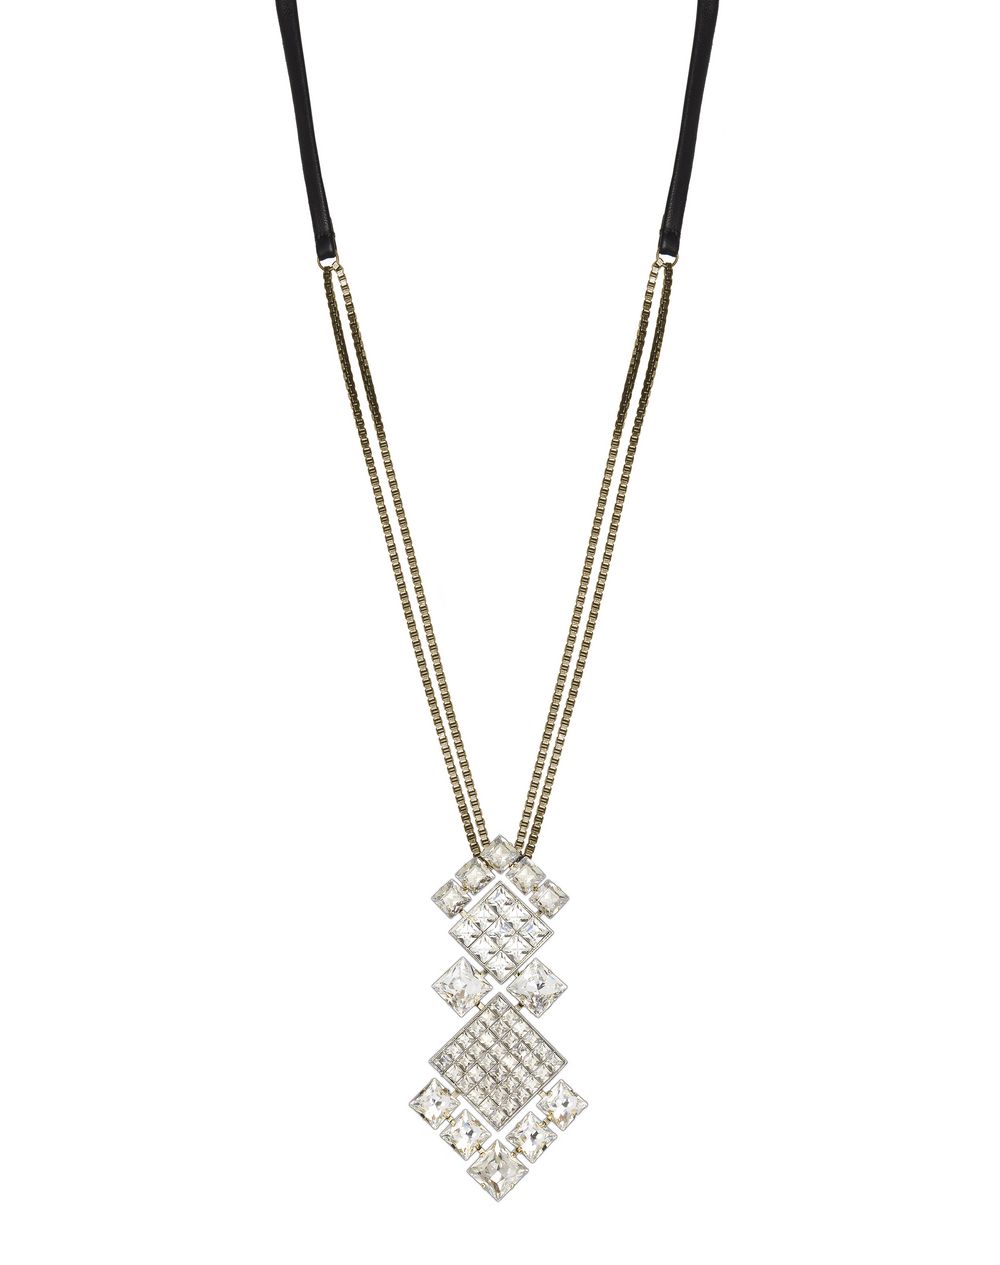 Collier Diamond Square composé de diamants en pierres Swarovski de couleur cristal, Lanvin – Prix €995